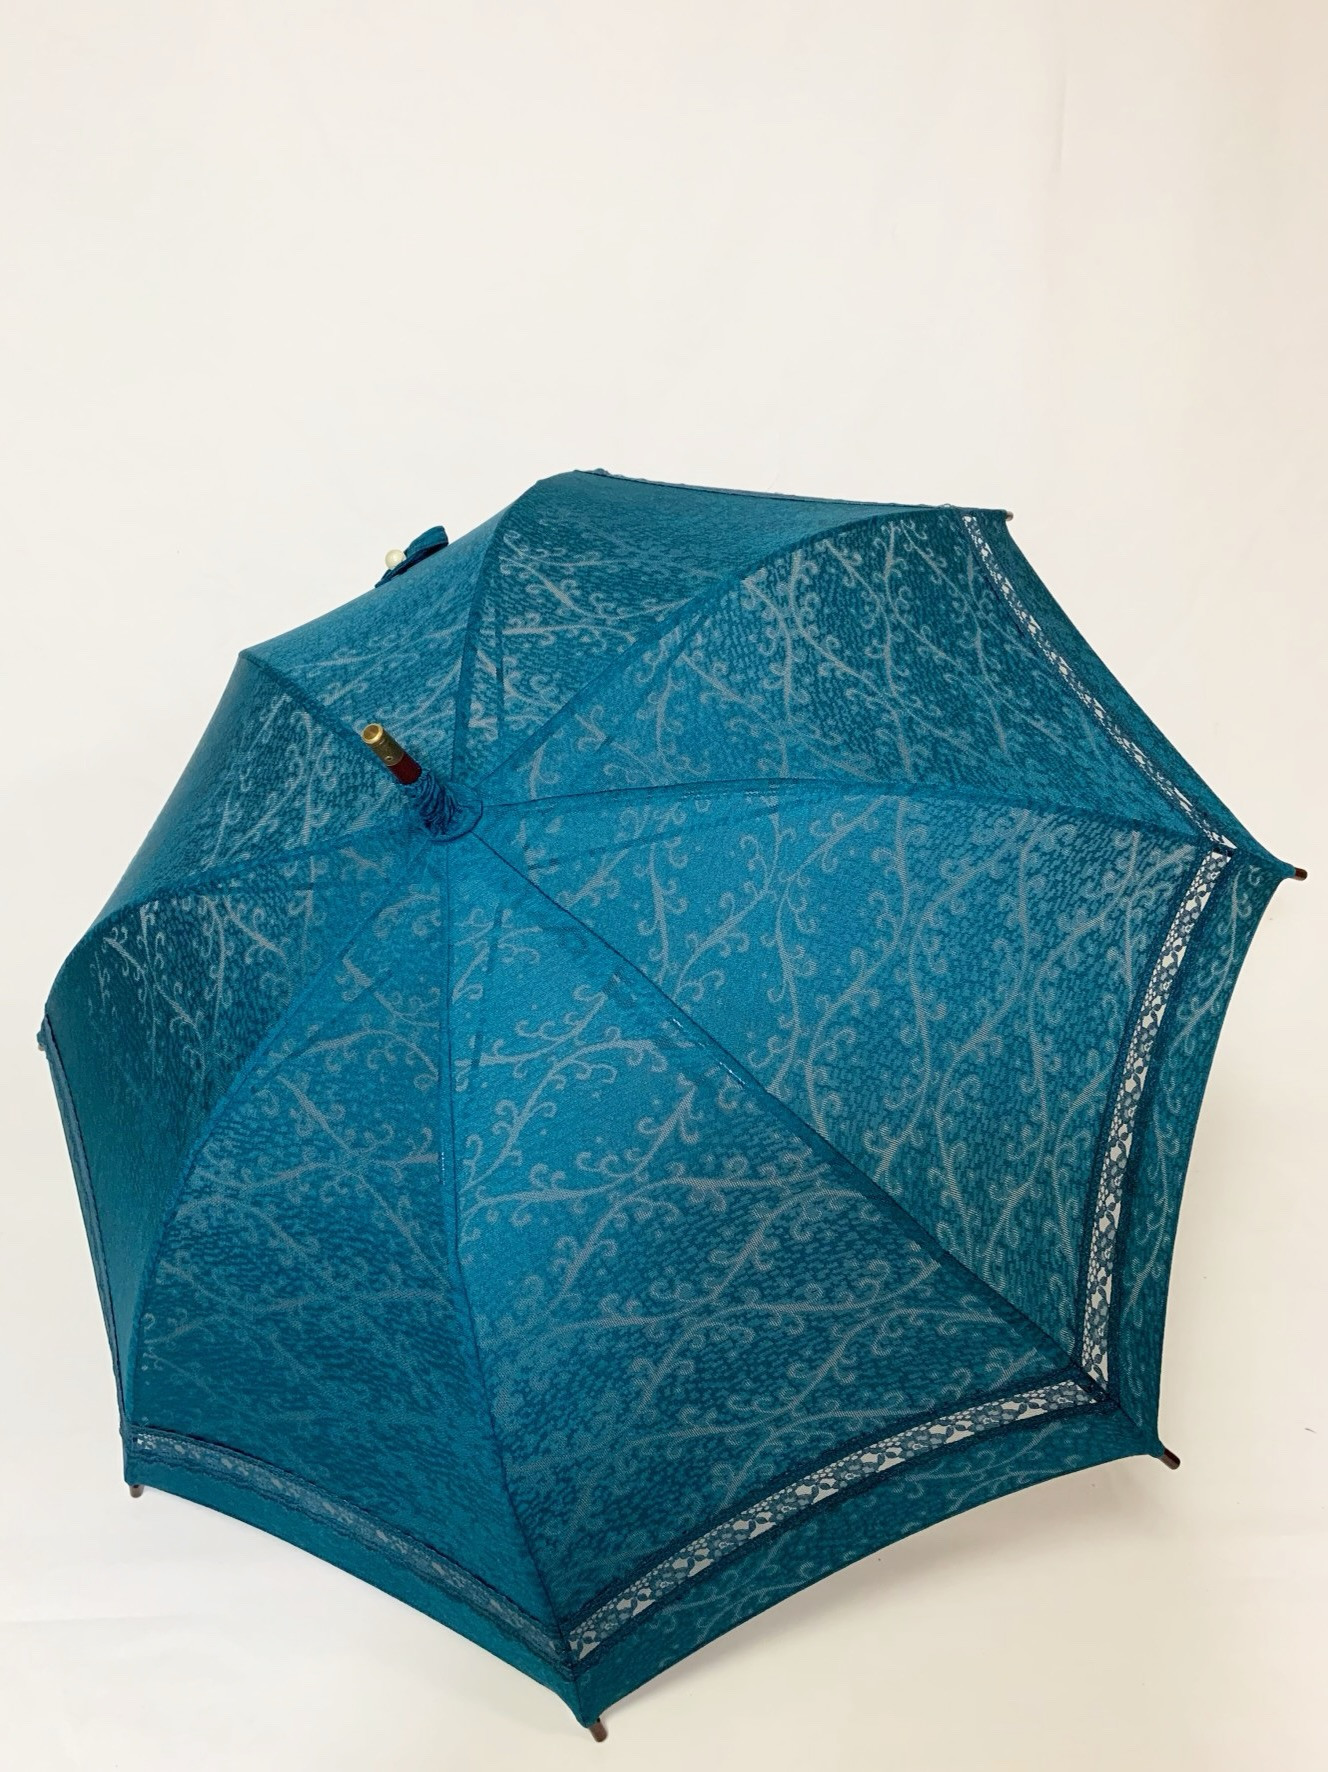 アート傘や着物傘は使いやすい機能性を持ち合わせています